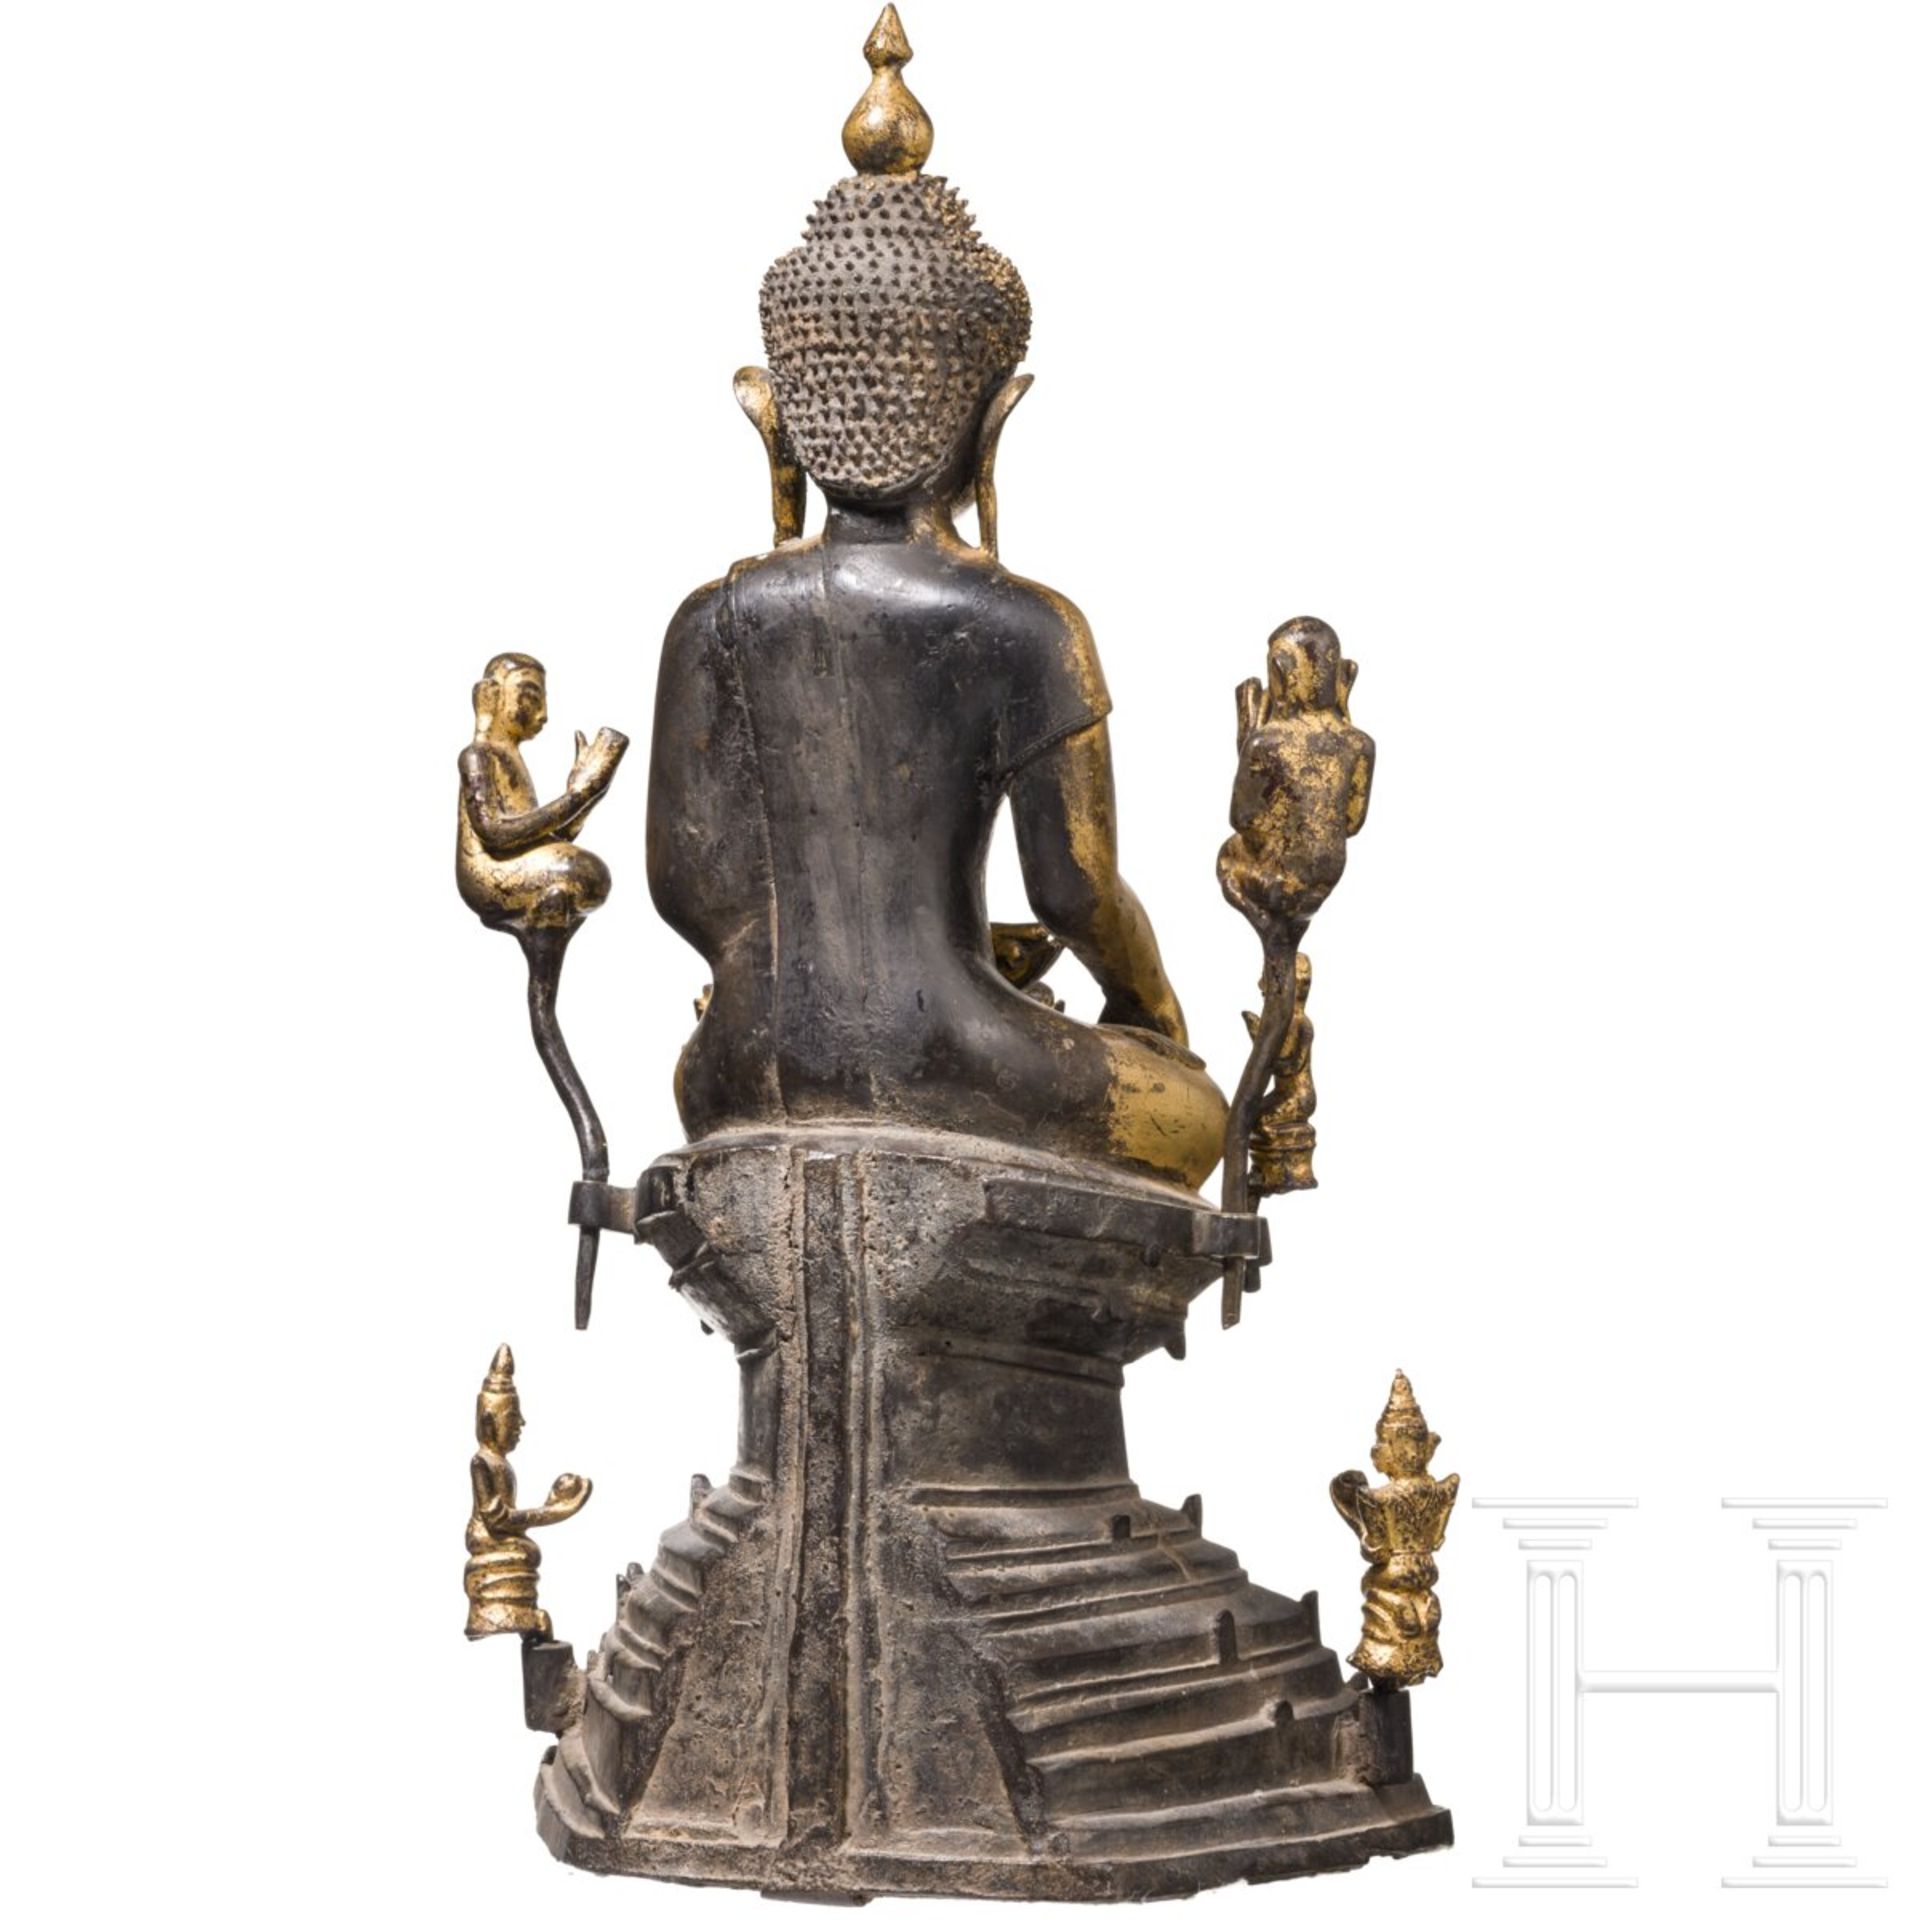 Lackierte und vergoldete Buddhafigur, Burma, 17./18. Jhdt. - Bild 4 aus 7